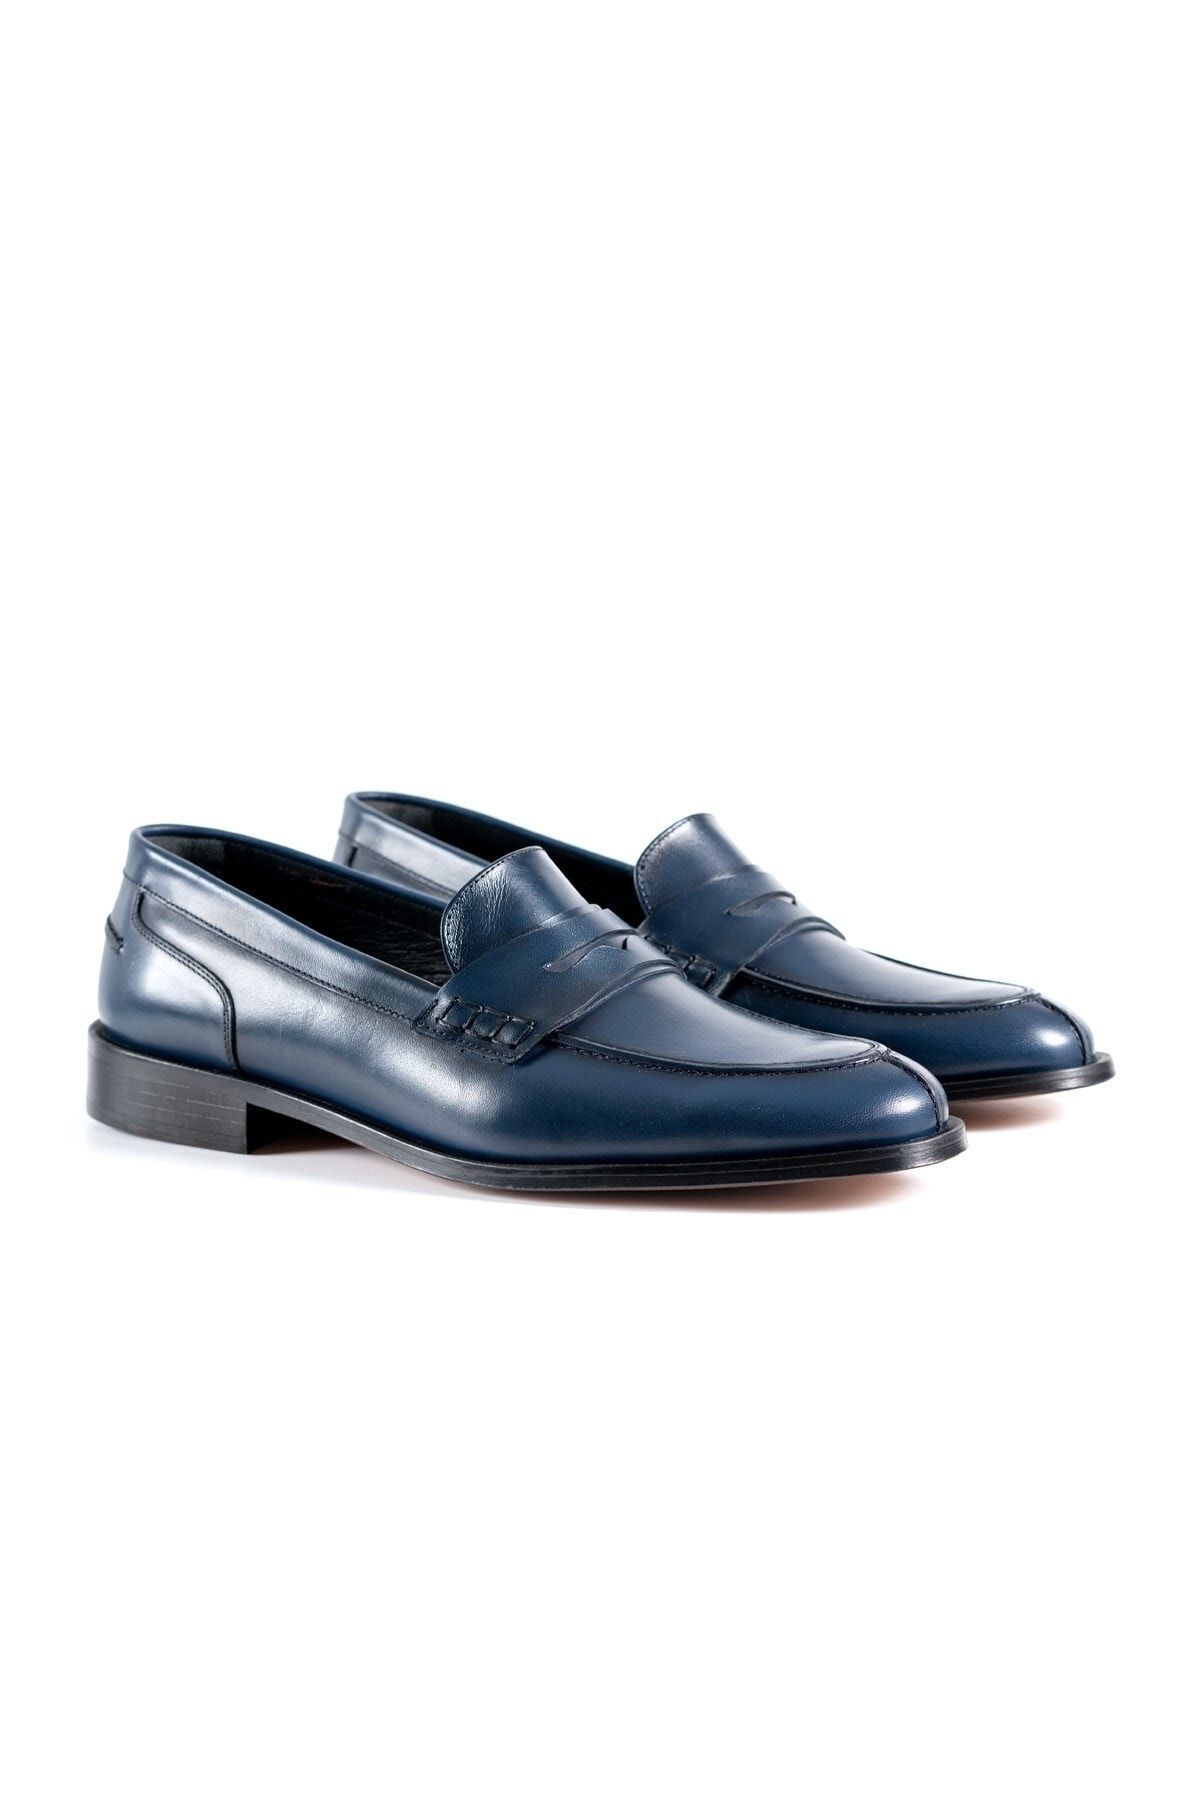 Laviovil Mavi Içi Dışı Hakiki Deri Kösele Taban Klasik Erkek Ayakkabı Lvo202210ek457